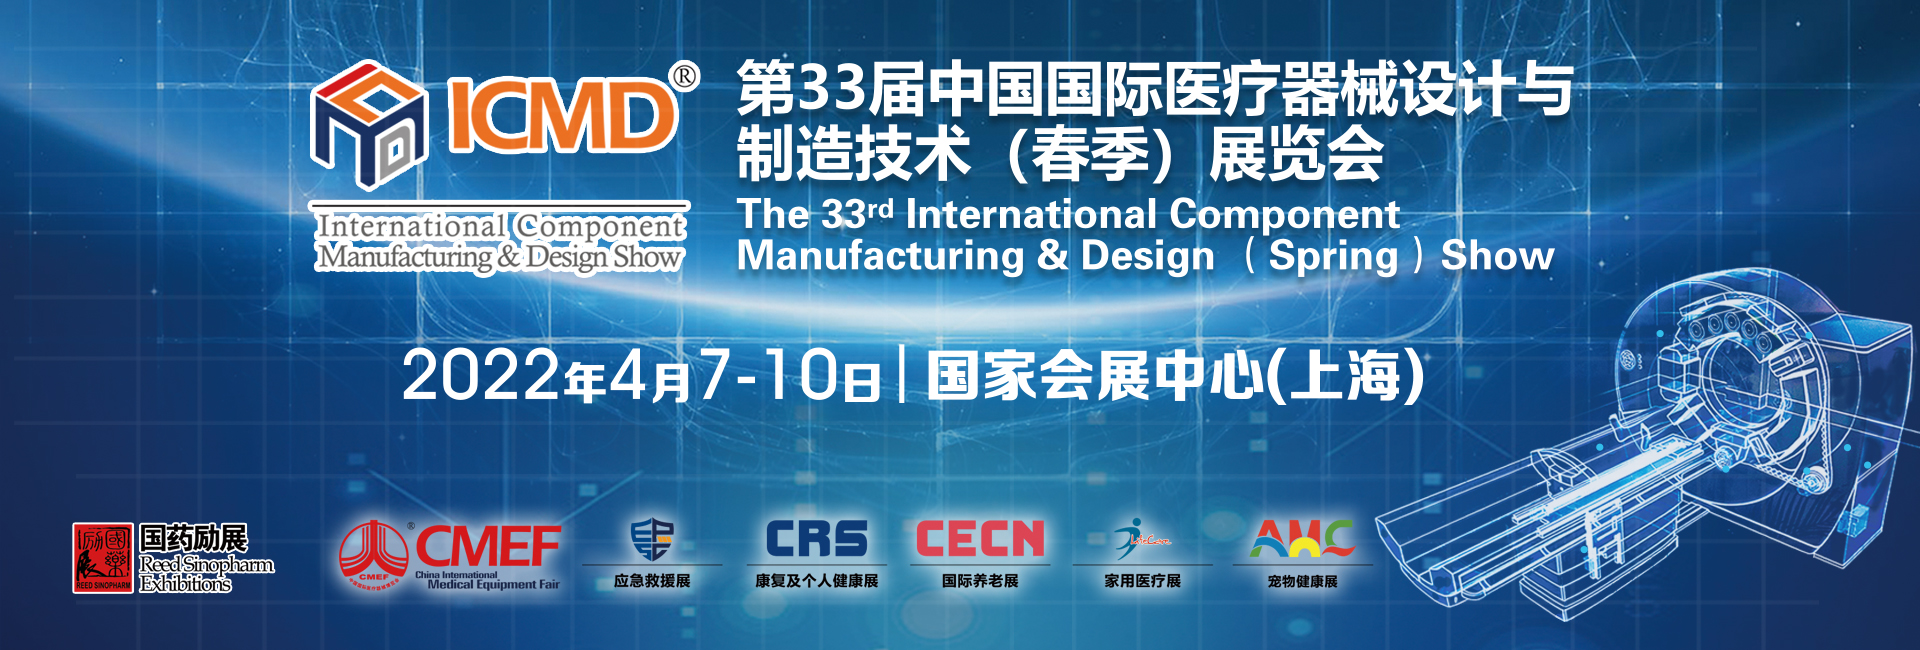 脉冲电子（东莞）有限公司受邀参加第31届中国国际医疗器械设计与制造技术（春季）展览会